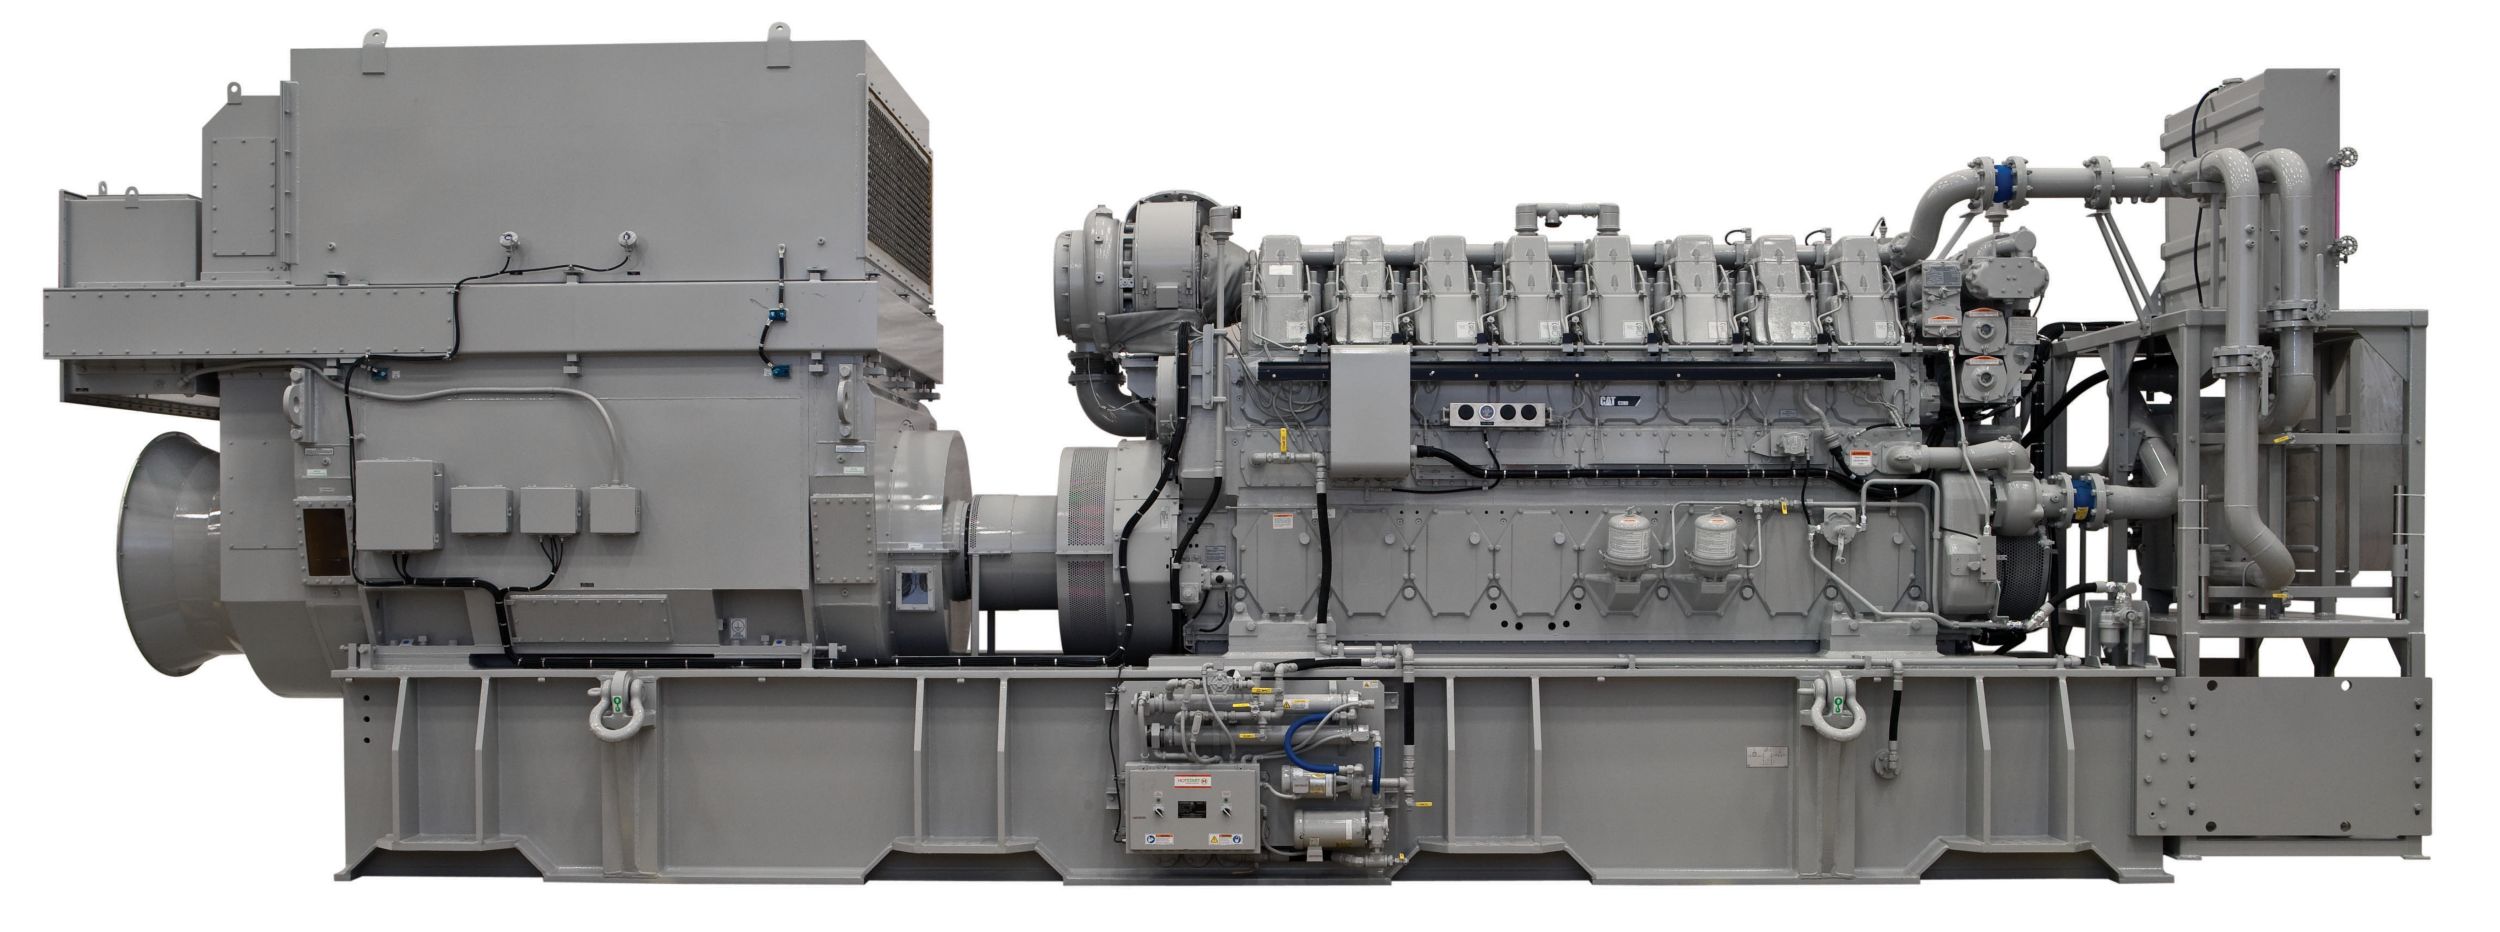 product-C280-8 Offshore Generator Set